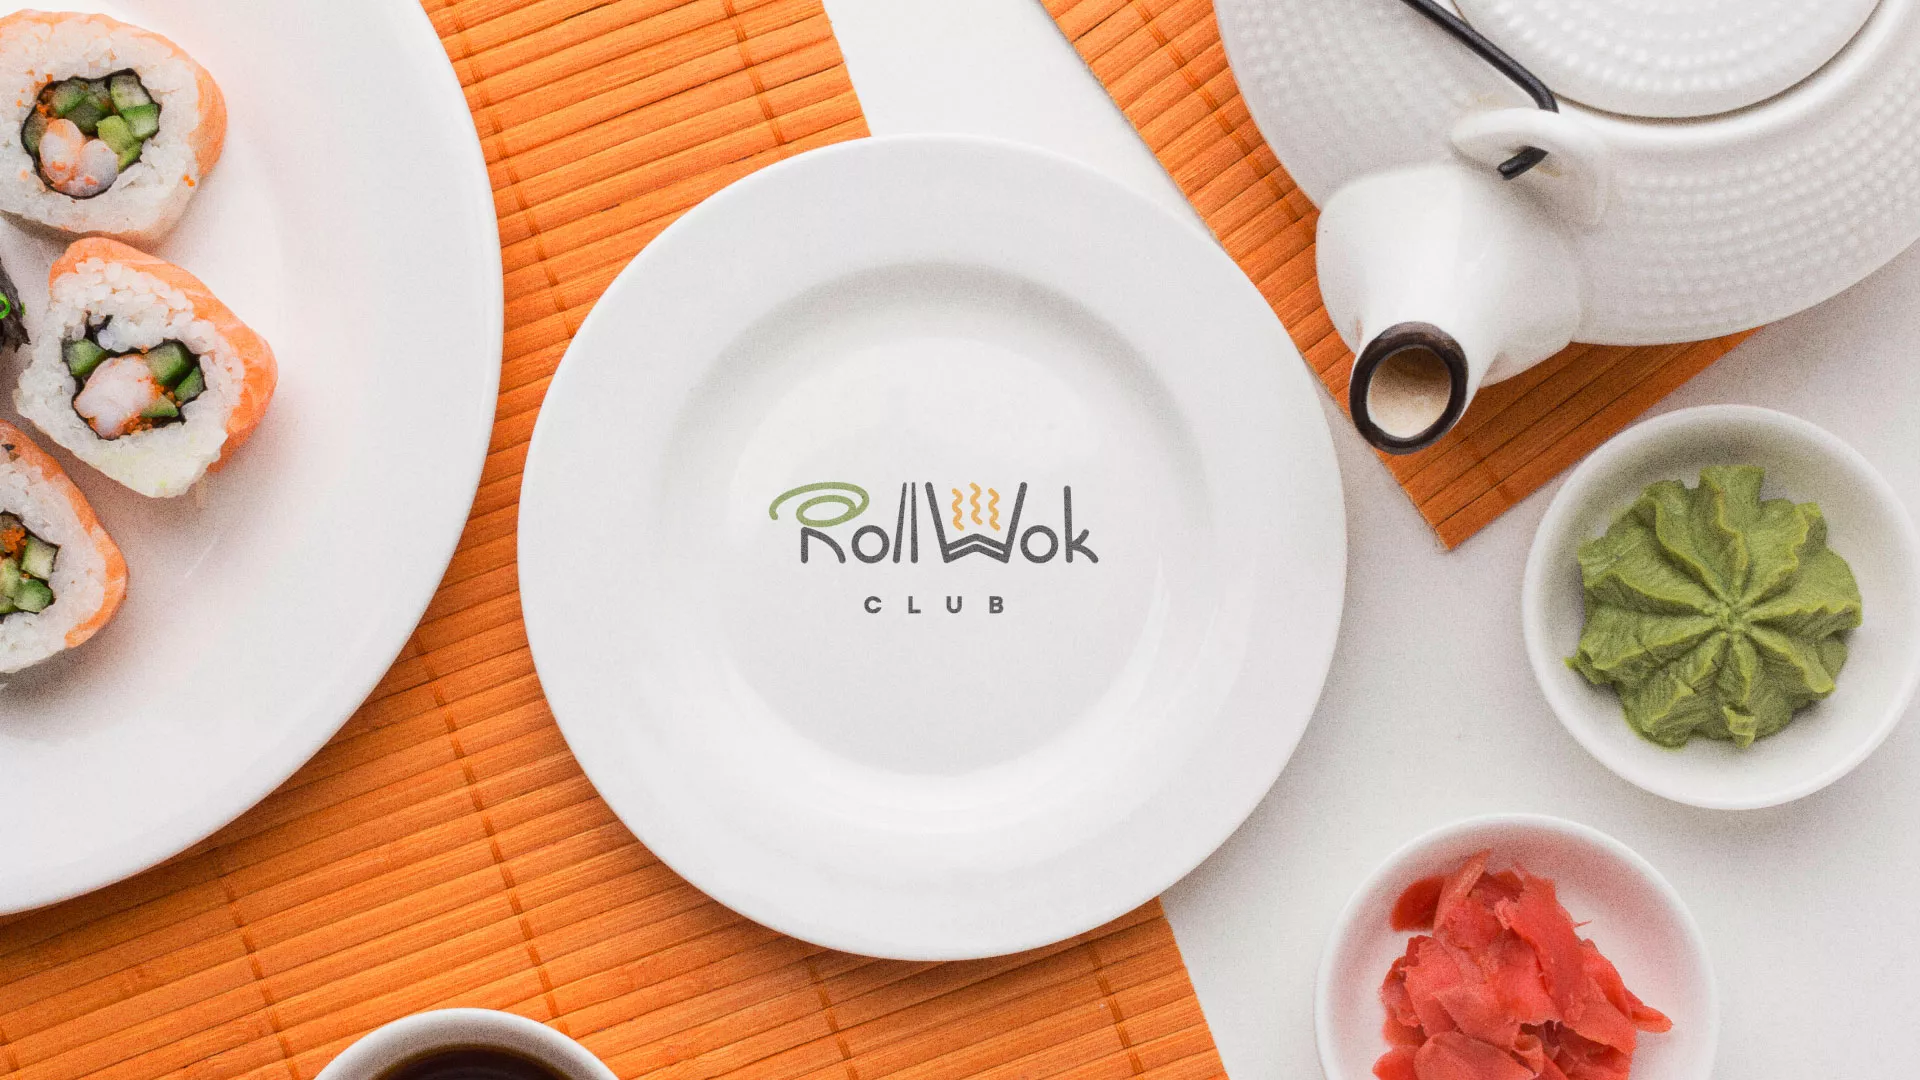 Разработка логотипа и фирменного стиля суши-бара «Roll Wok Club» в Железнодорожном